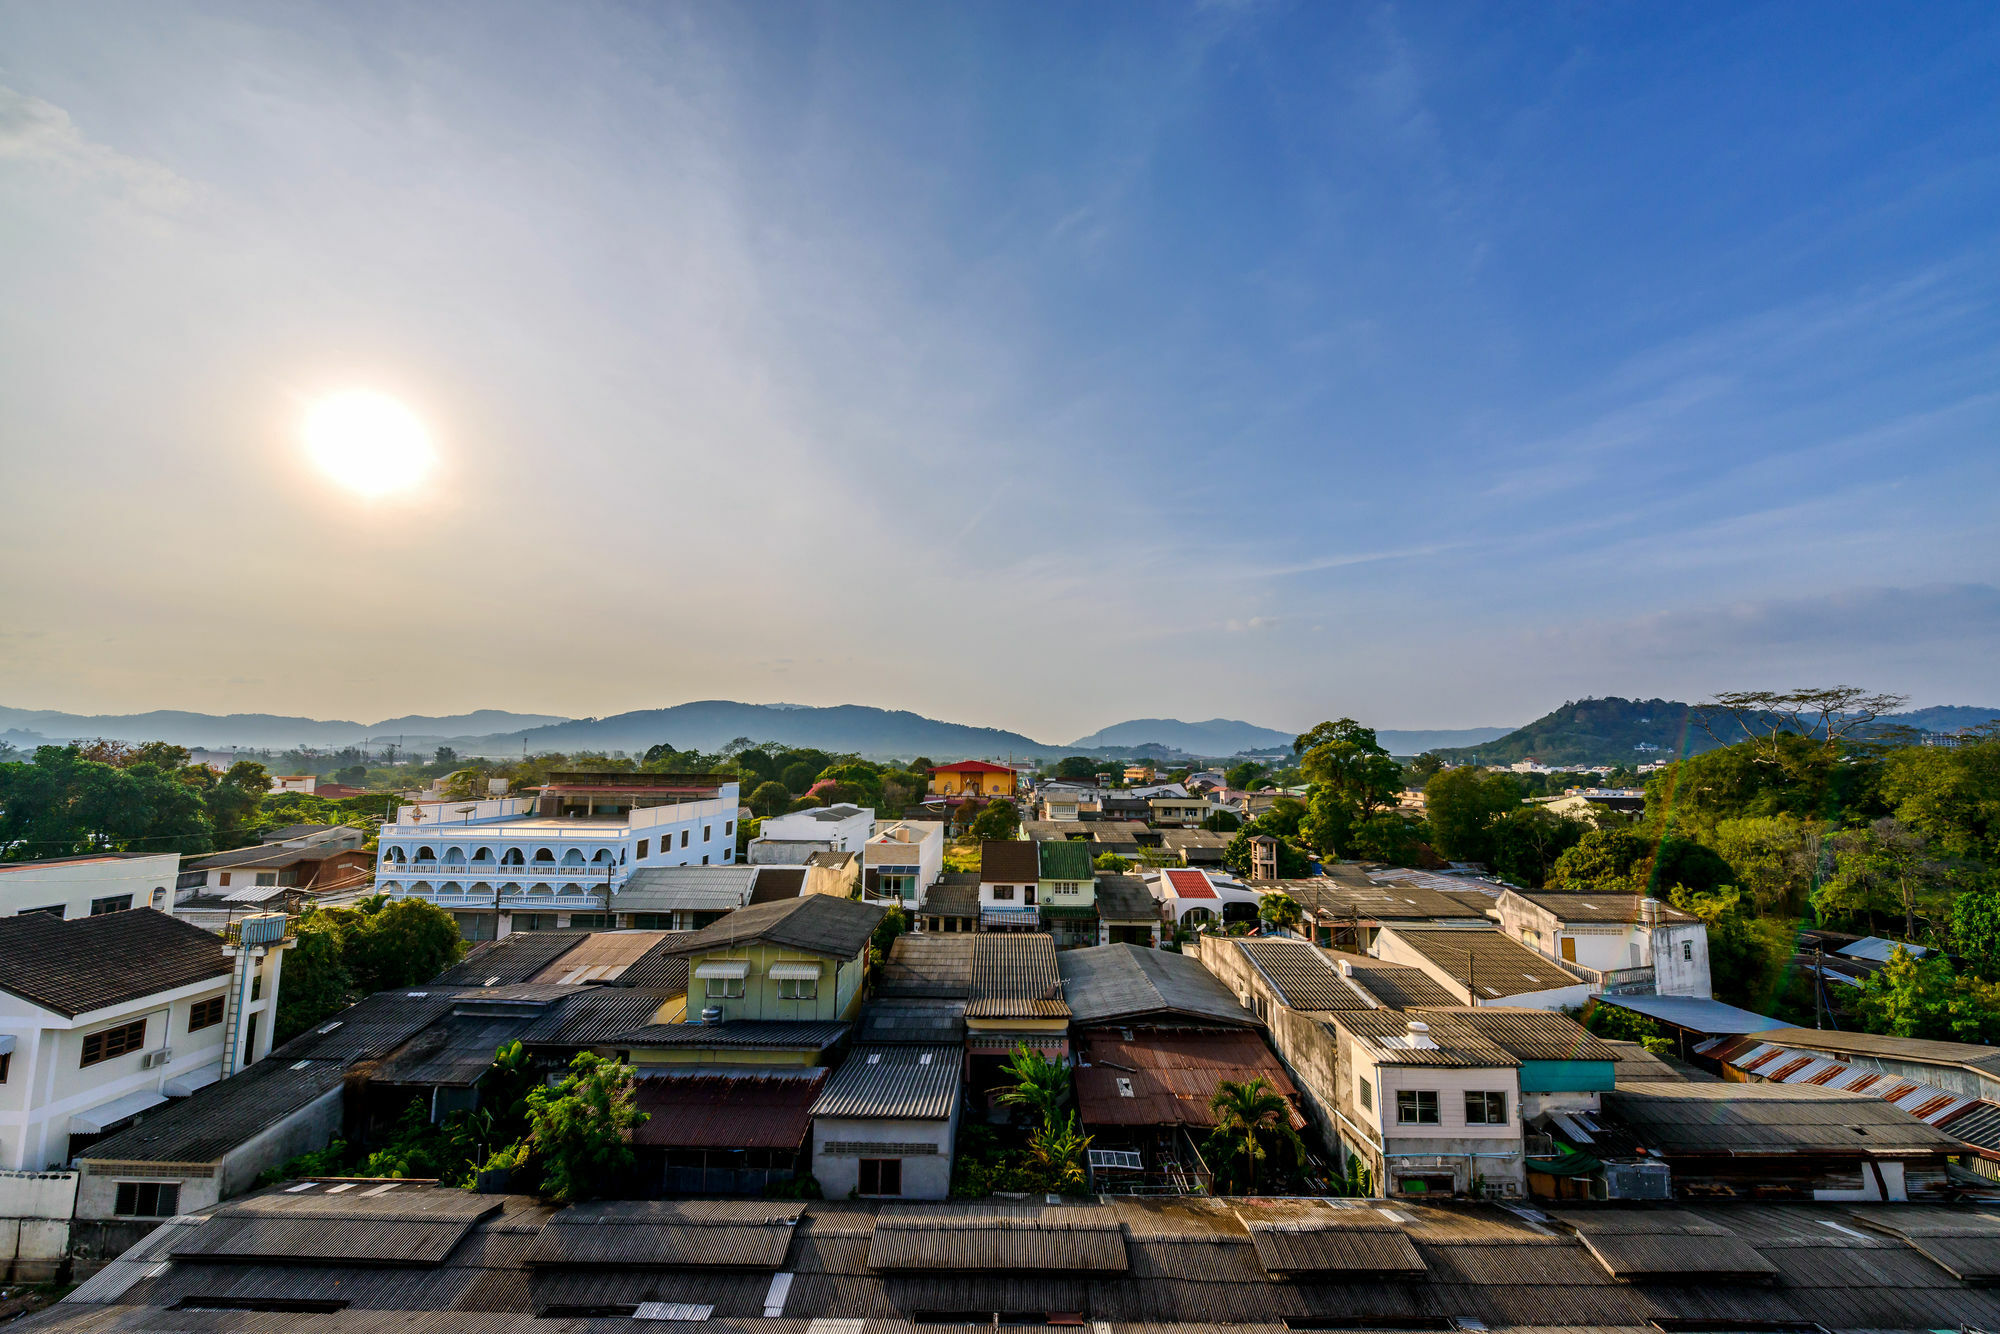 The Topaz Residence Phuket Town Exterior photo